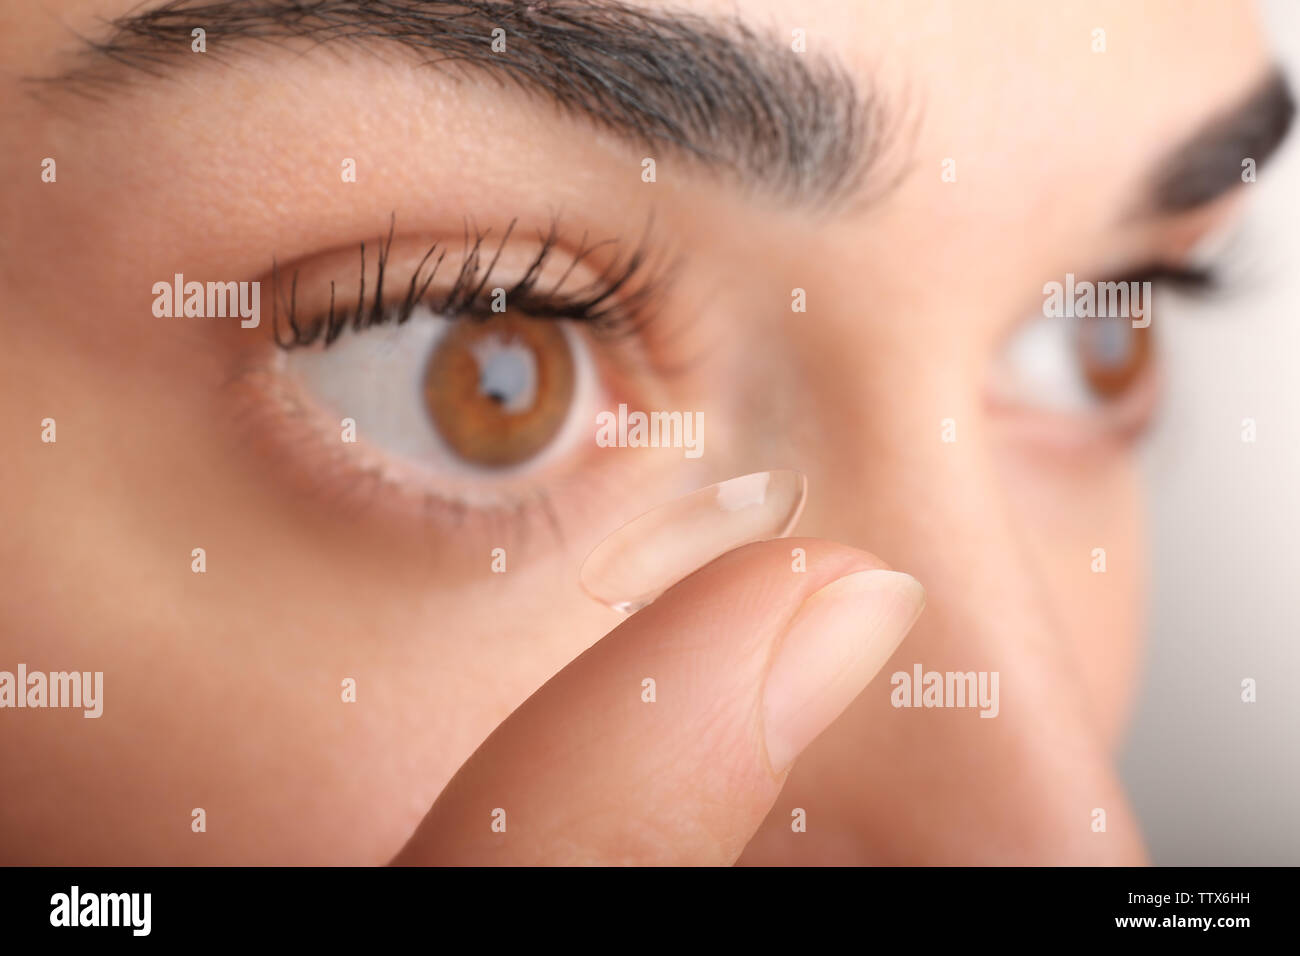 Giovane donna mettendo la lente a contatto nel suo occhio, vista ravvicinata. Medicina e vision concept Foto Stock